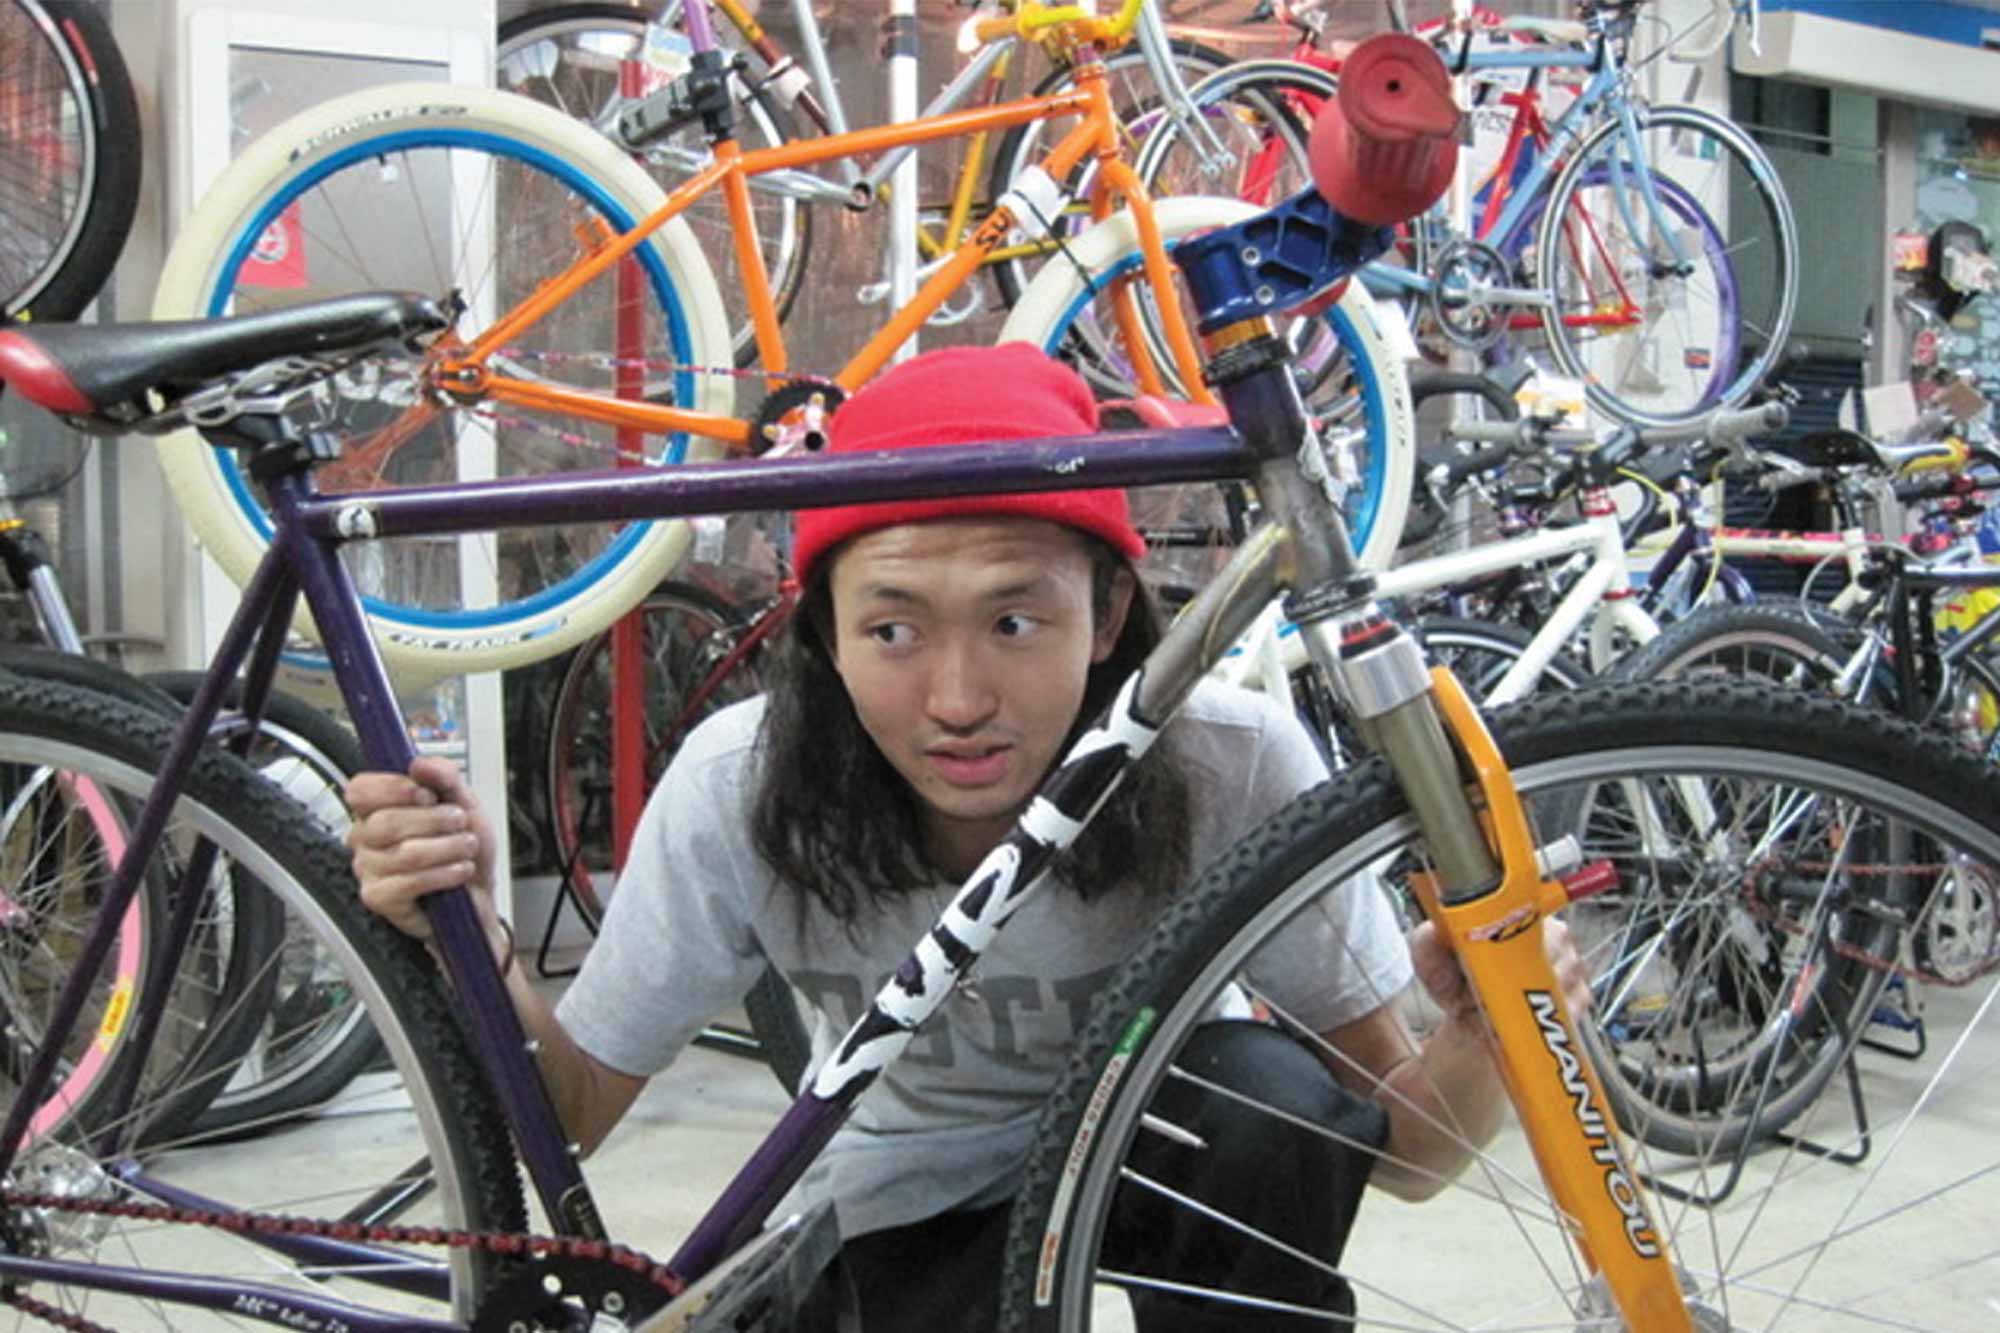 Kaneyan looking through a Surly bike frame